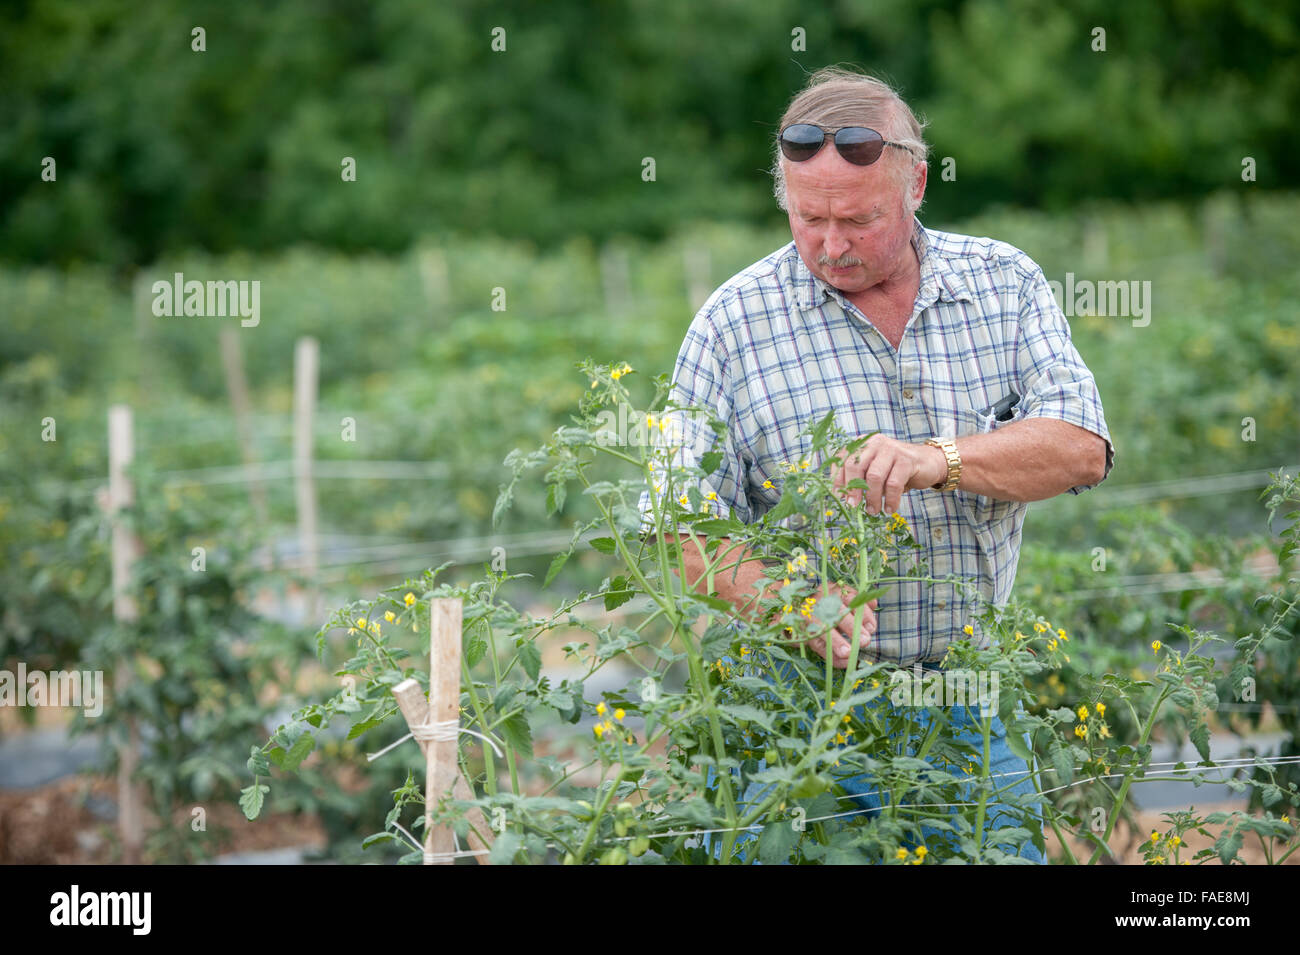 Agricultor mirando por encima de sus cultivos Foto de stock